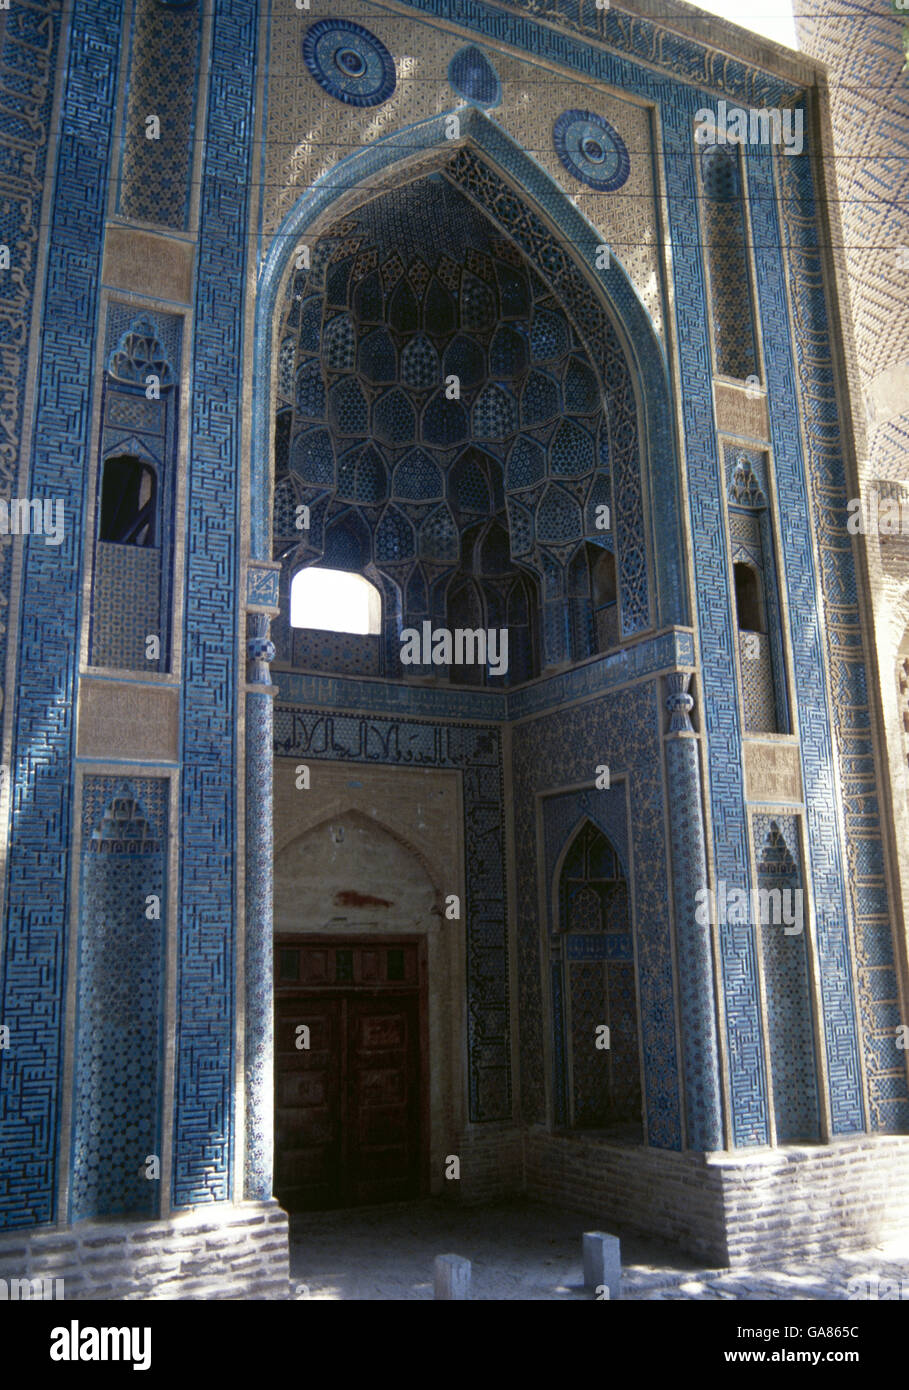 L'Iran. Natanz. La mosquée Jameh (vendredi). Portail d'entrée décoré avec sol carrelé symétrique de la calligraphie. Banque D'Images